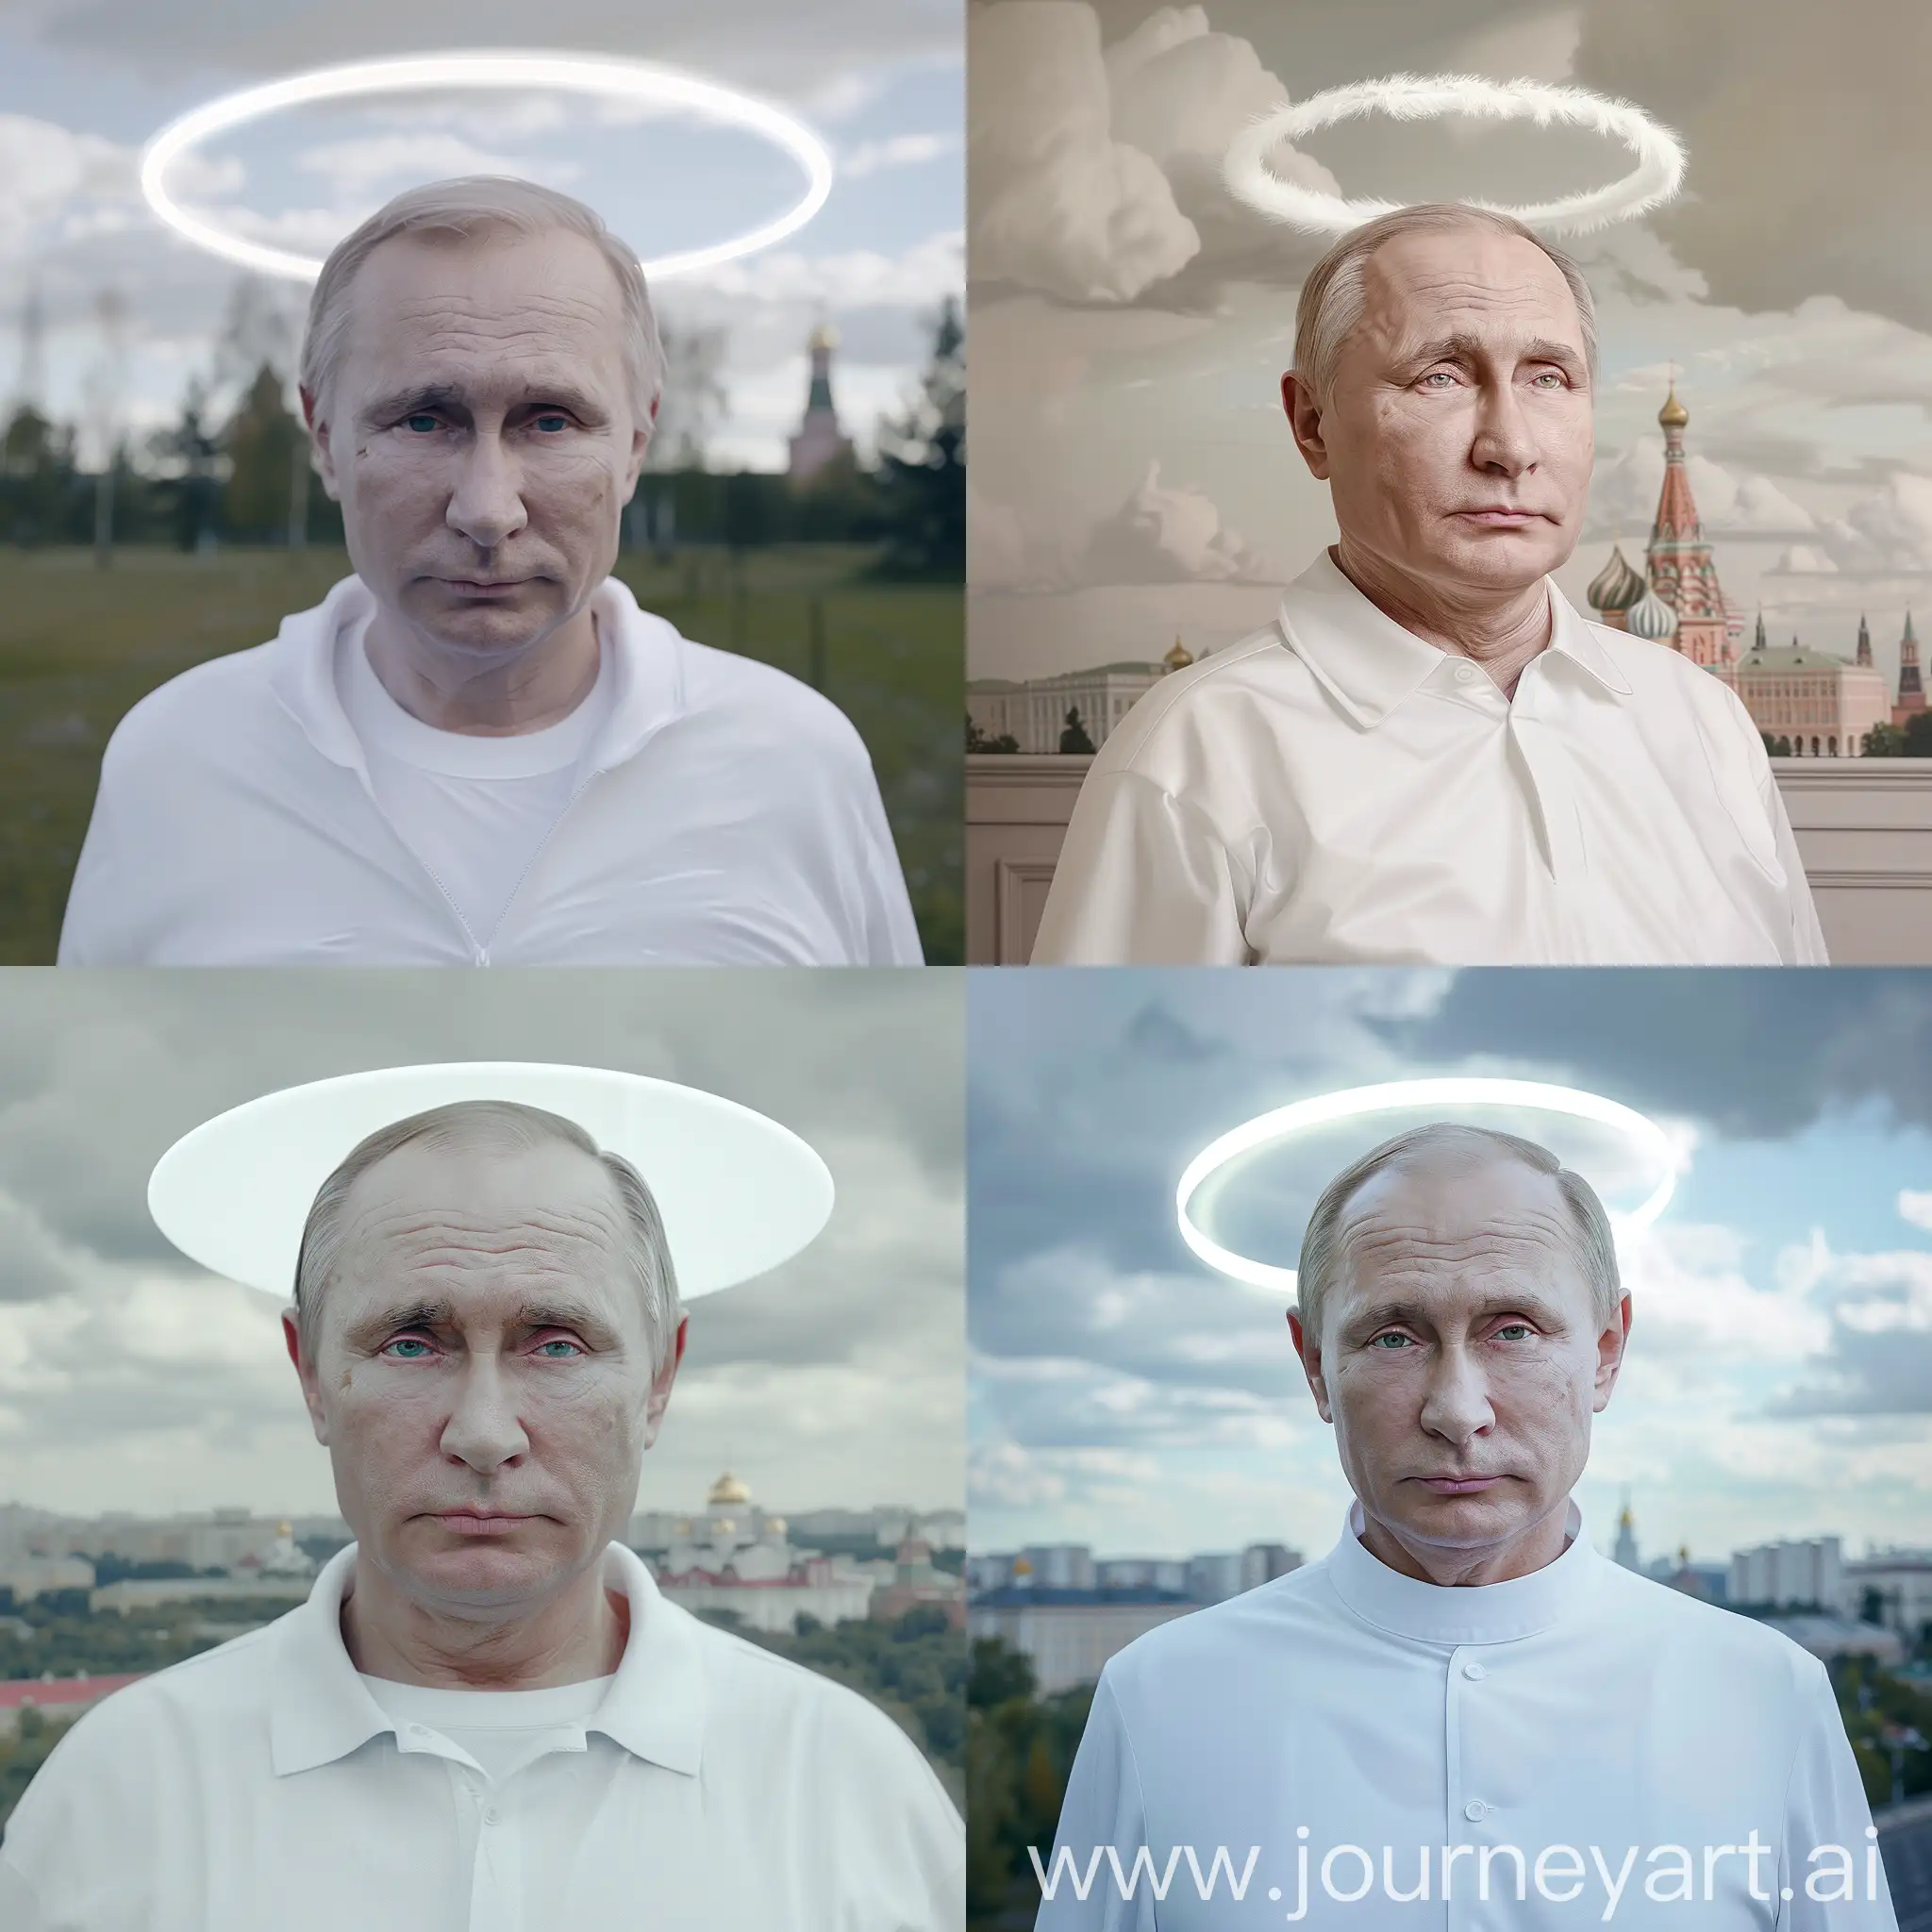 Владимир Путин в белой одежде образ бога, белый нимб над головой, задний фон москва, 8к, гипер реализм. максимум деталей, крупный план, острый фокус